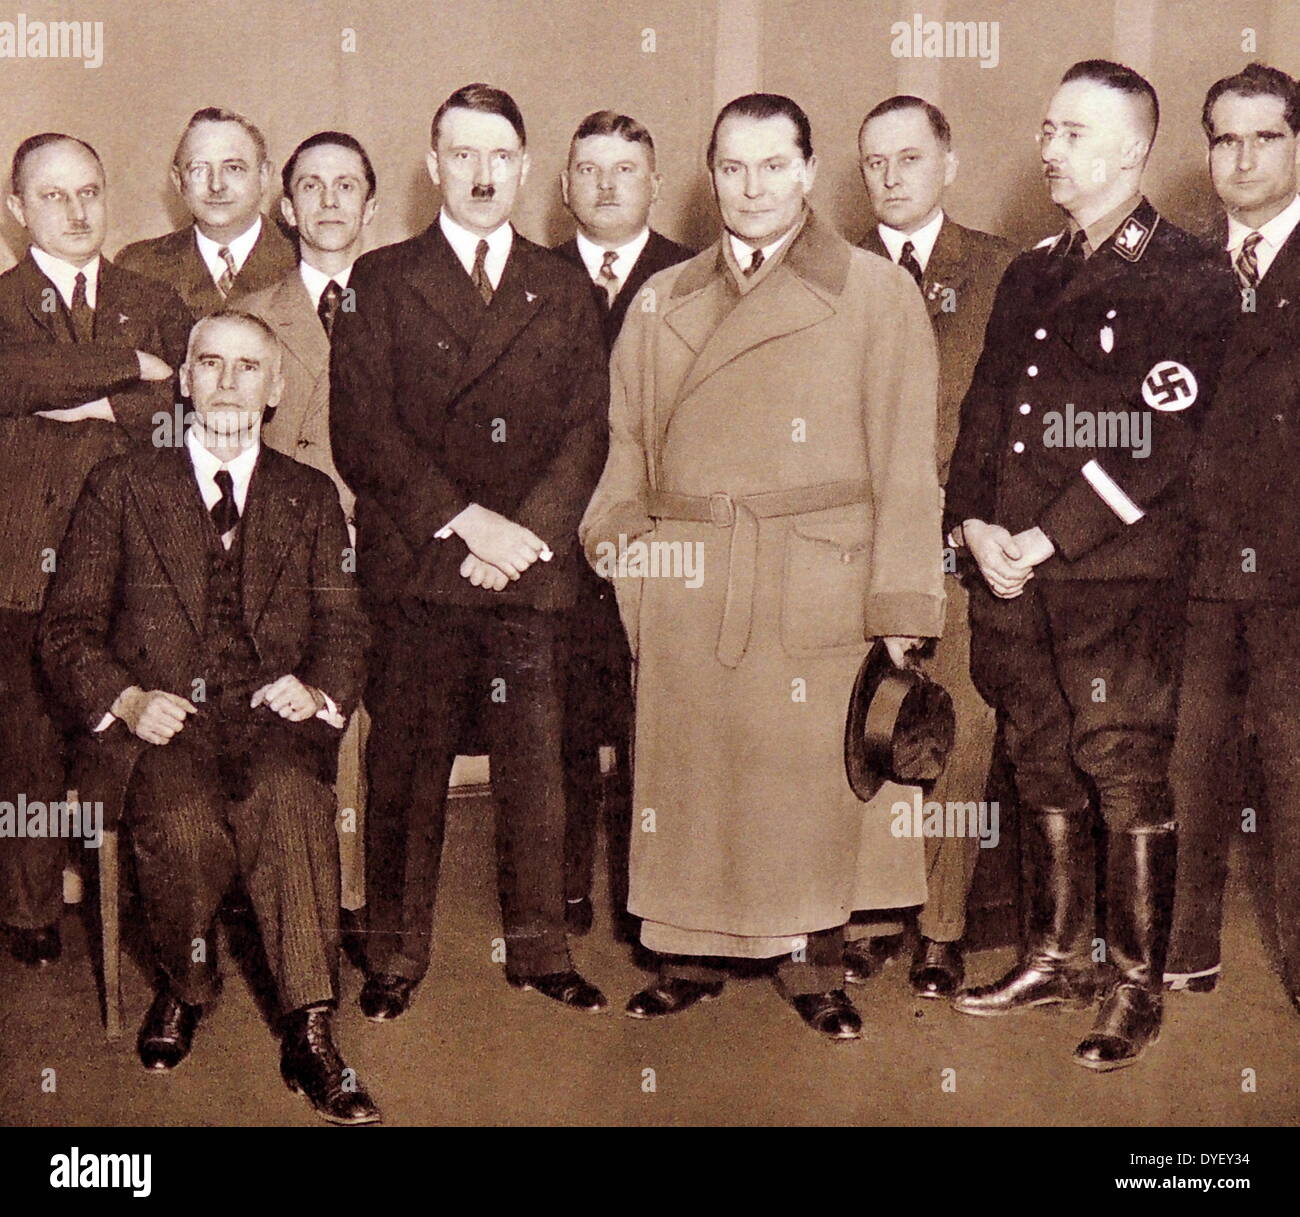 Da sinistra a destra: leader nazista fotografato nel 1933; il Ministro della giustizia Erri, Josef Goebbels, Adolf Hitler, Ernst Roehm; Herman Goring, Ministro Darre, Heinrich Himmler capo delle SS, Vice Führer Rudolf Hess, Ministro Finace Frick Foto Stock